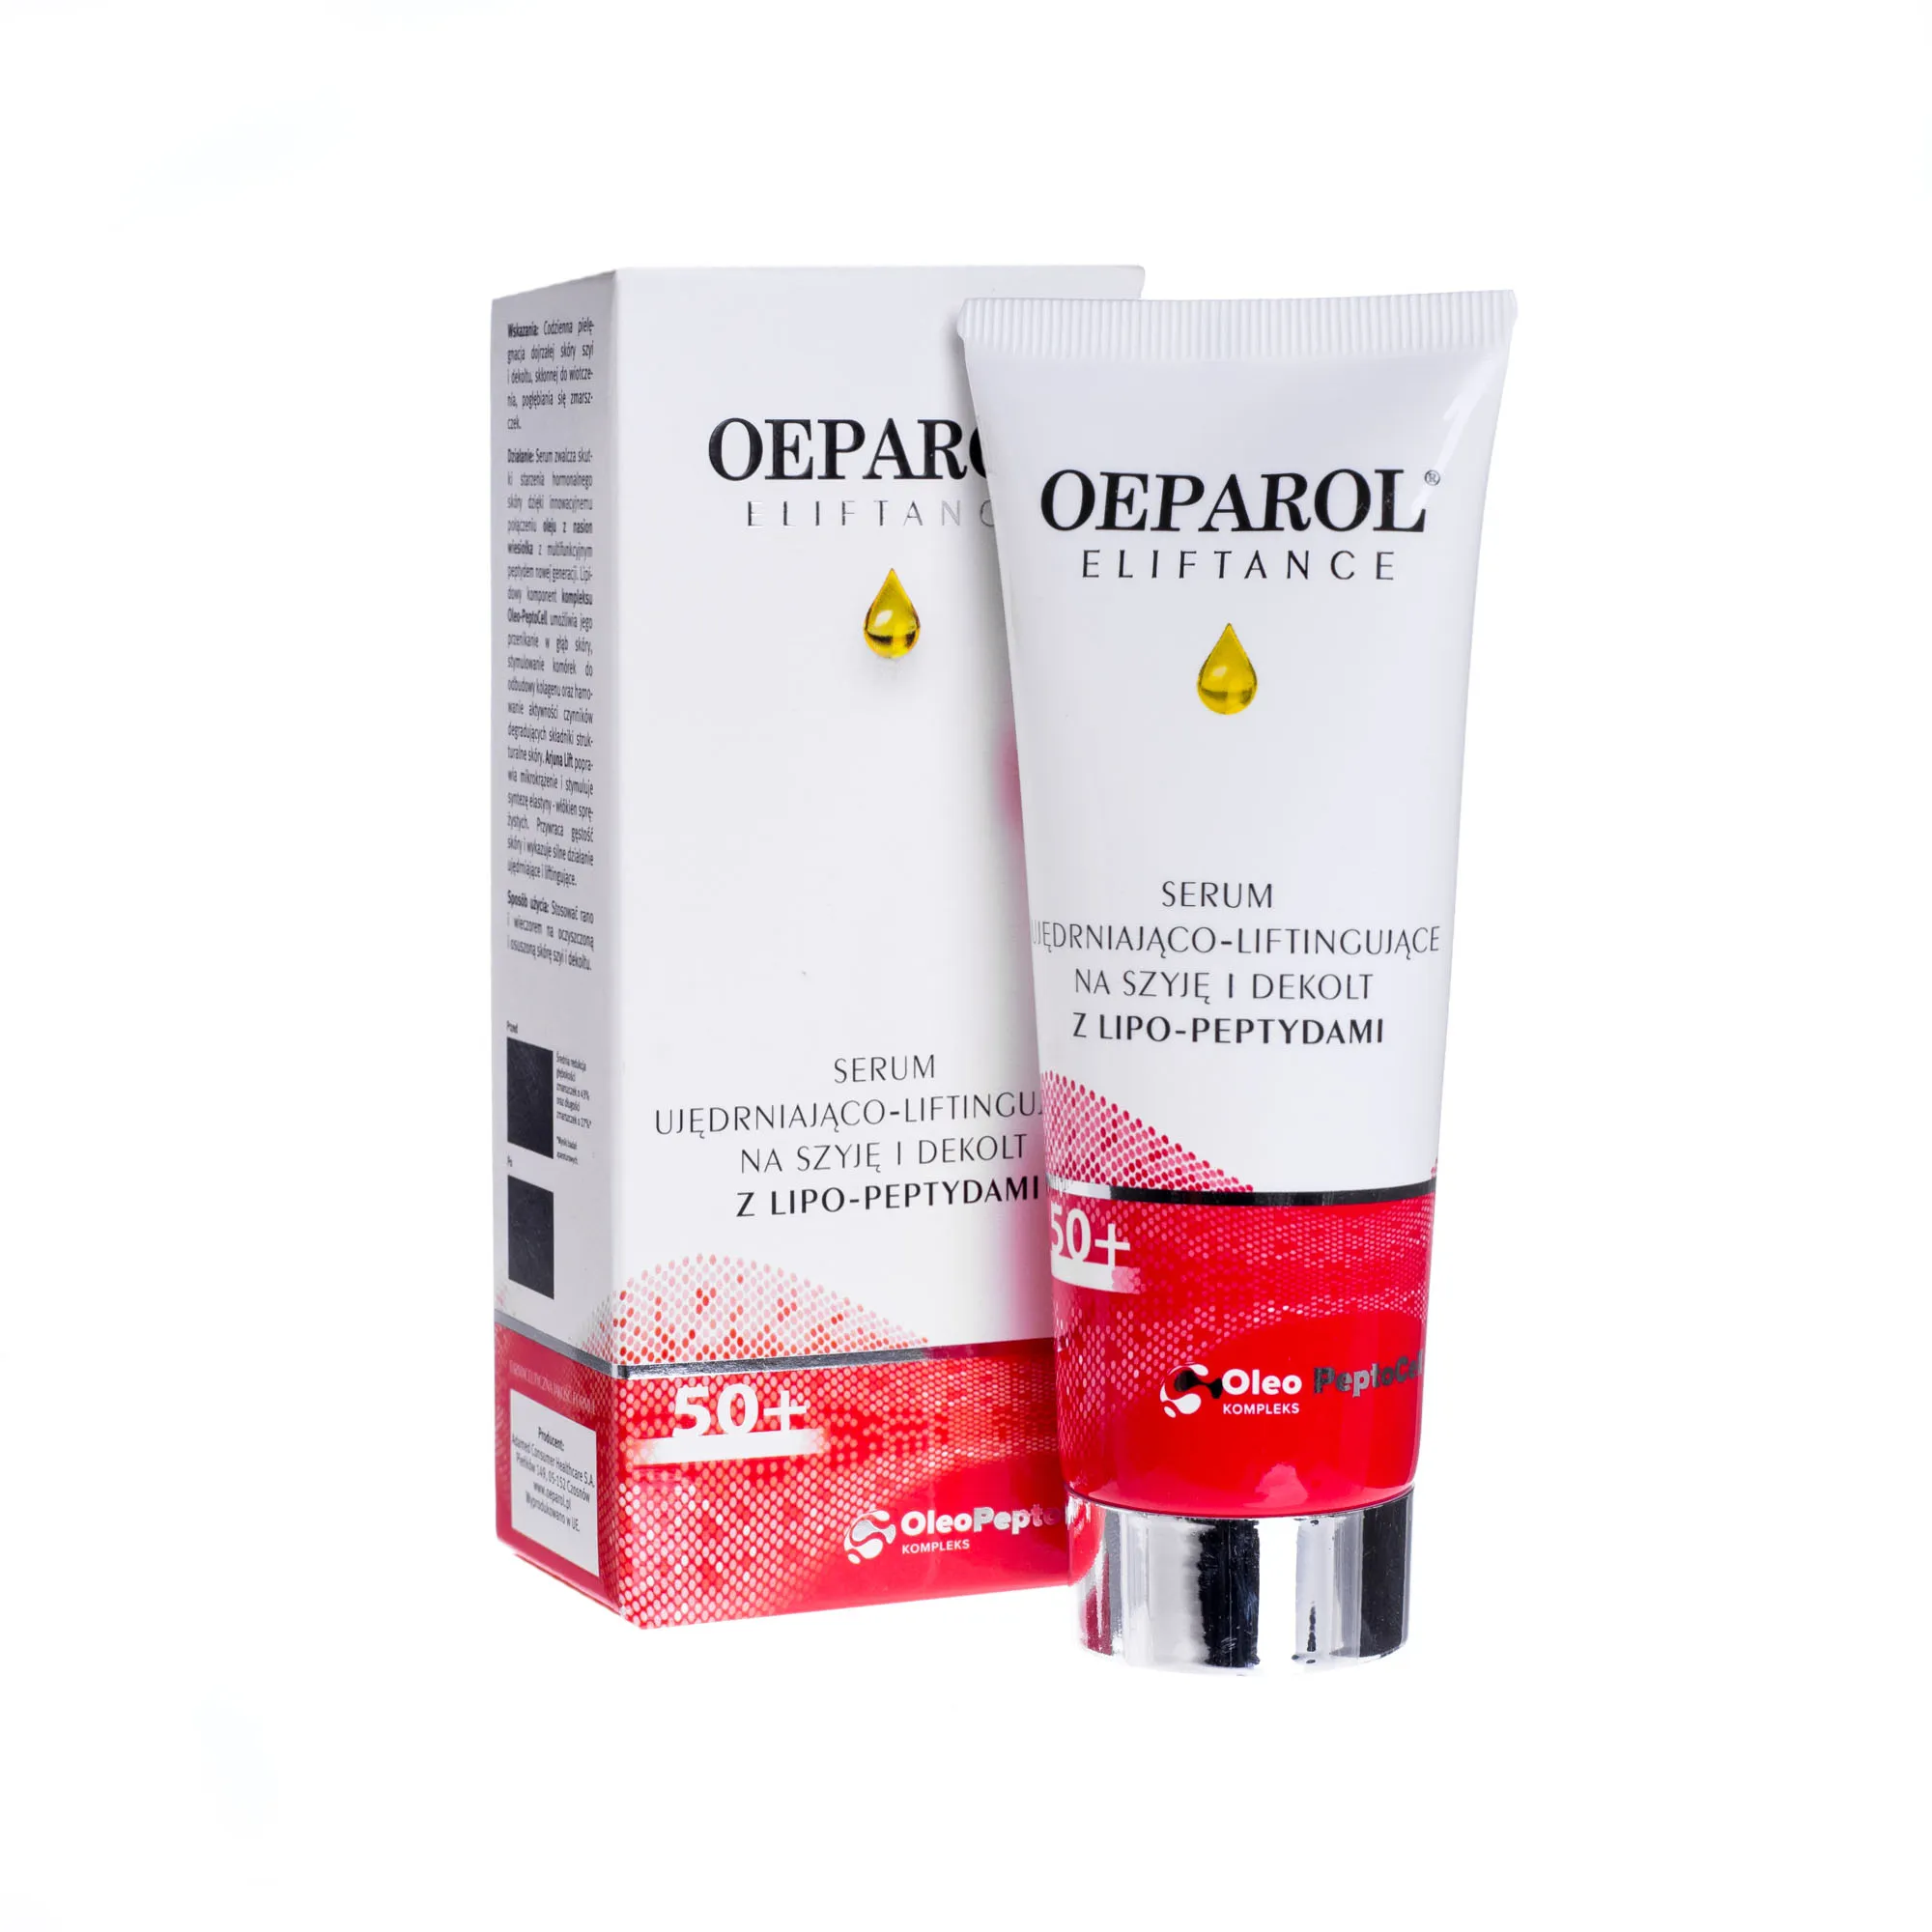 OEPAROL Eliftance 50+, serum ujędrniająco liftingujące na szyje i dekolt, 75 ml